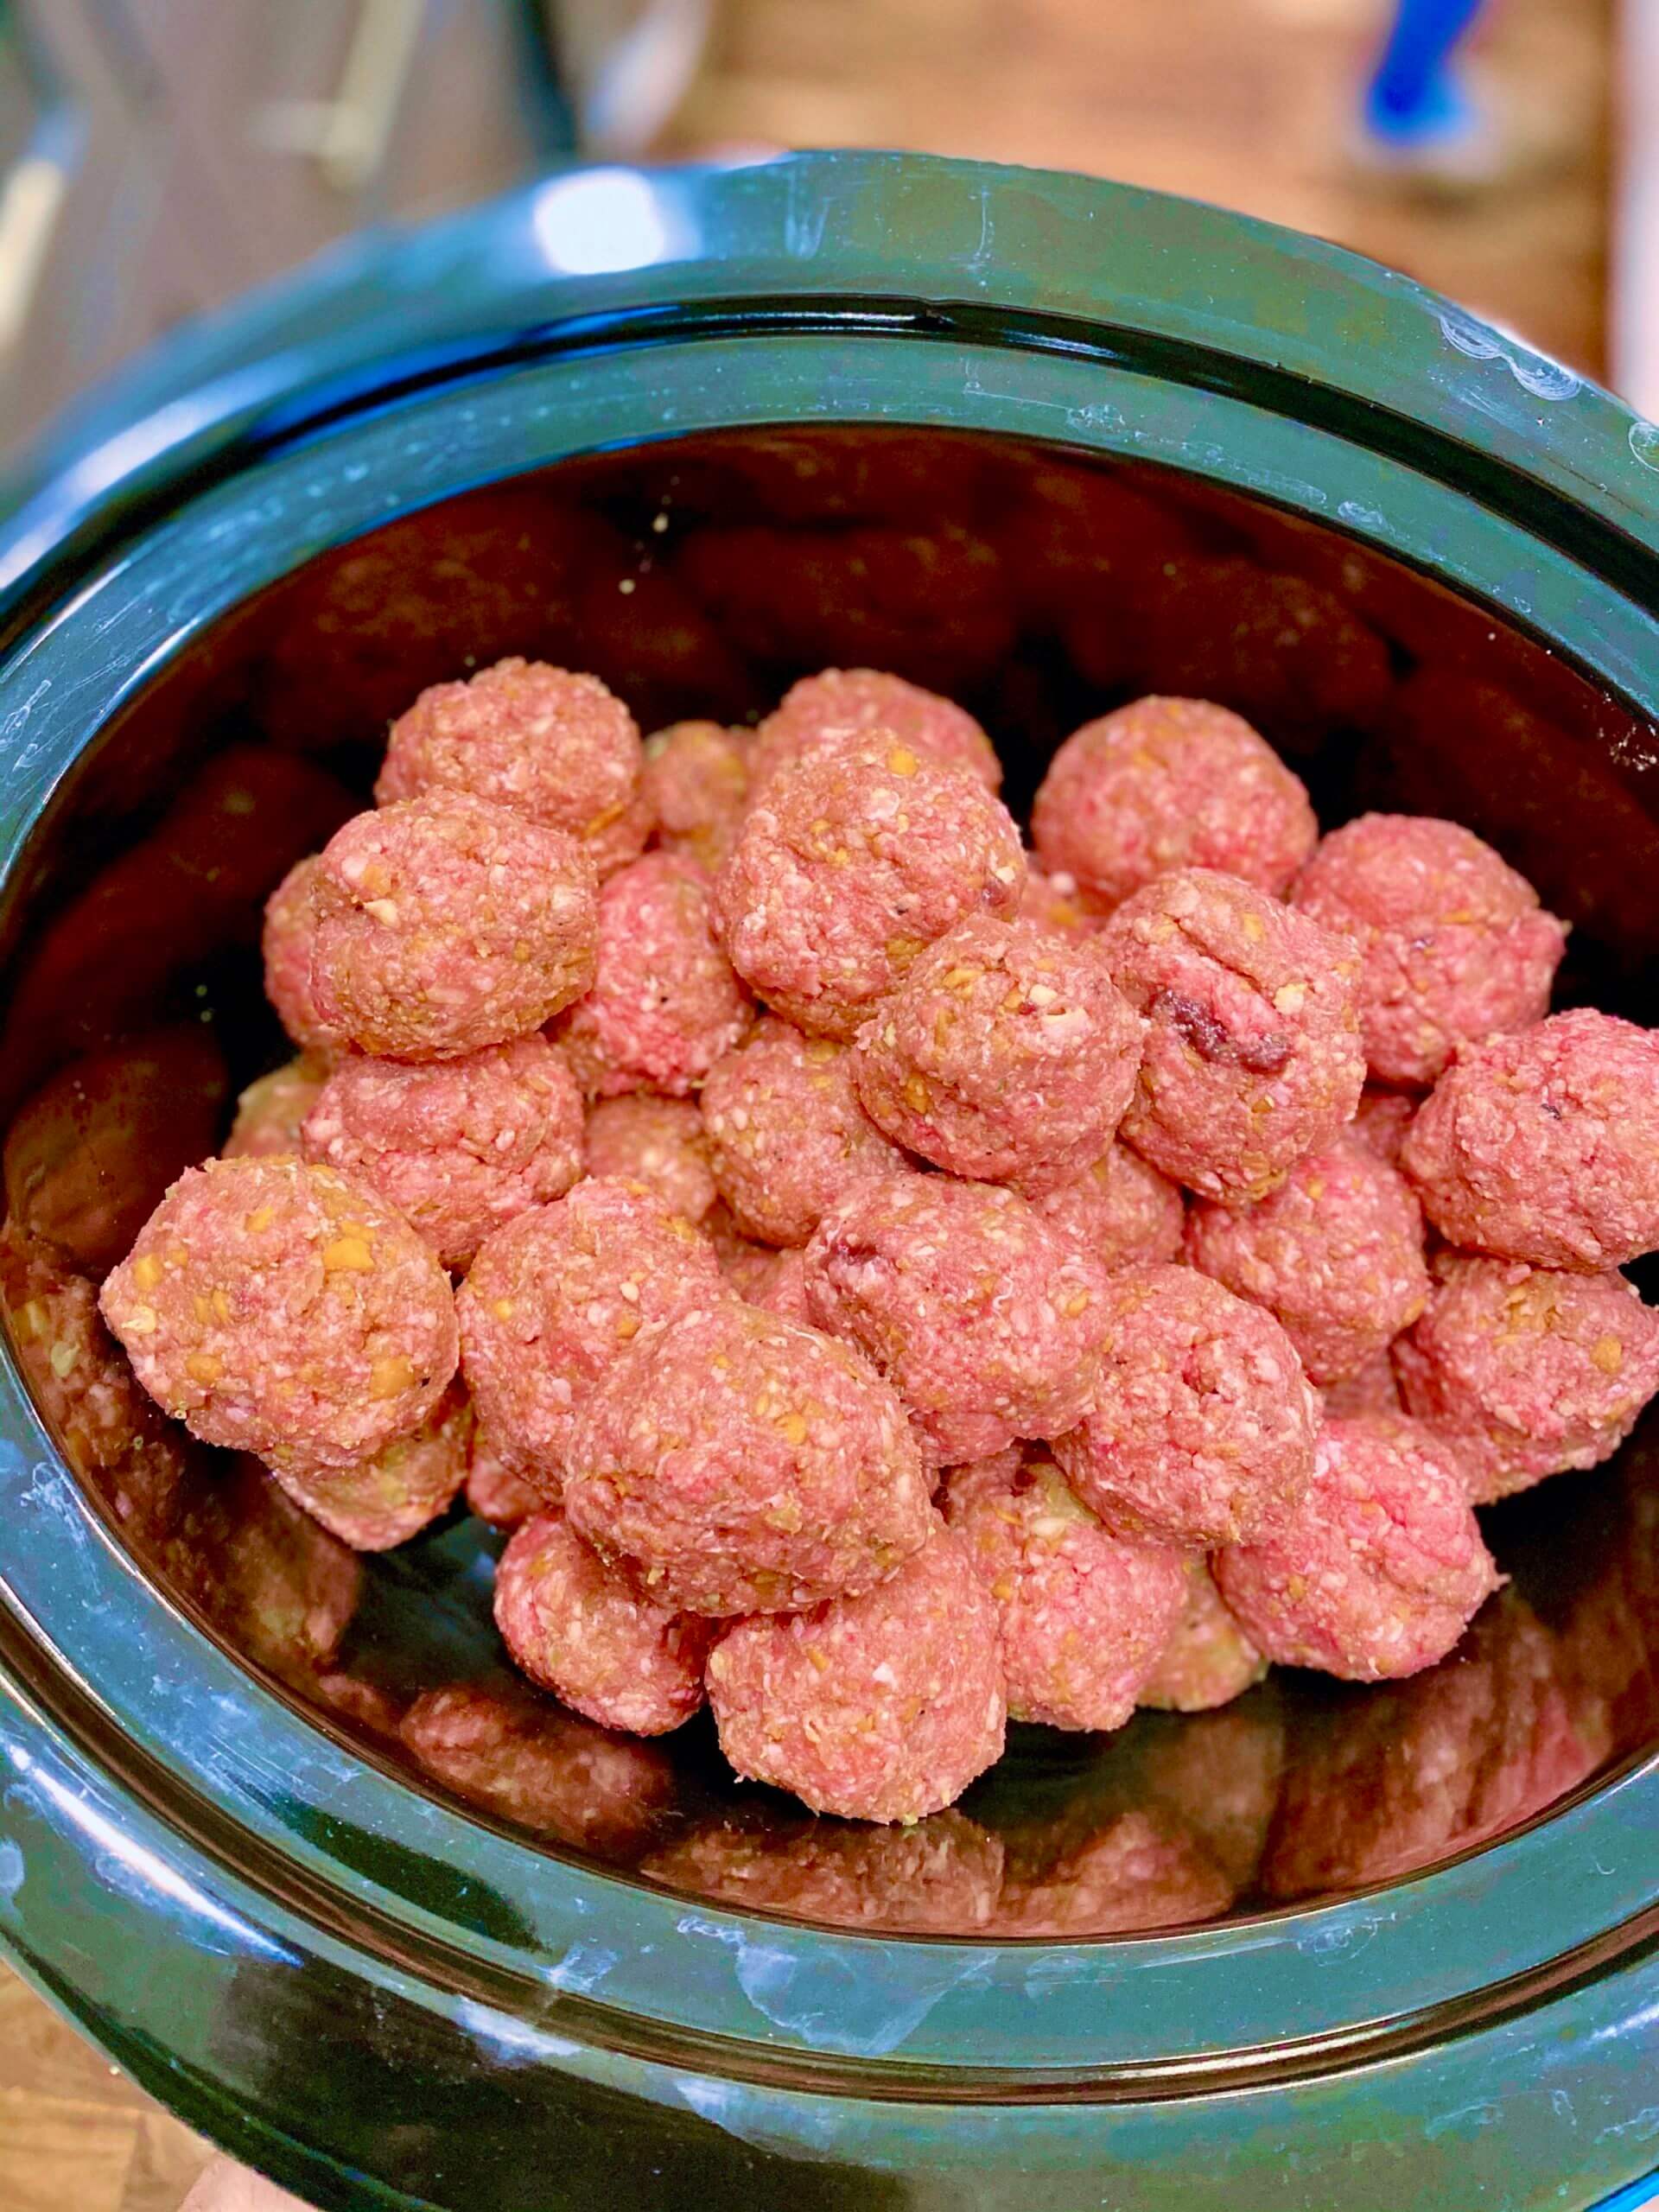 Liver meat balls